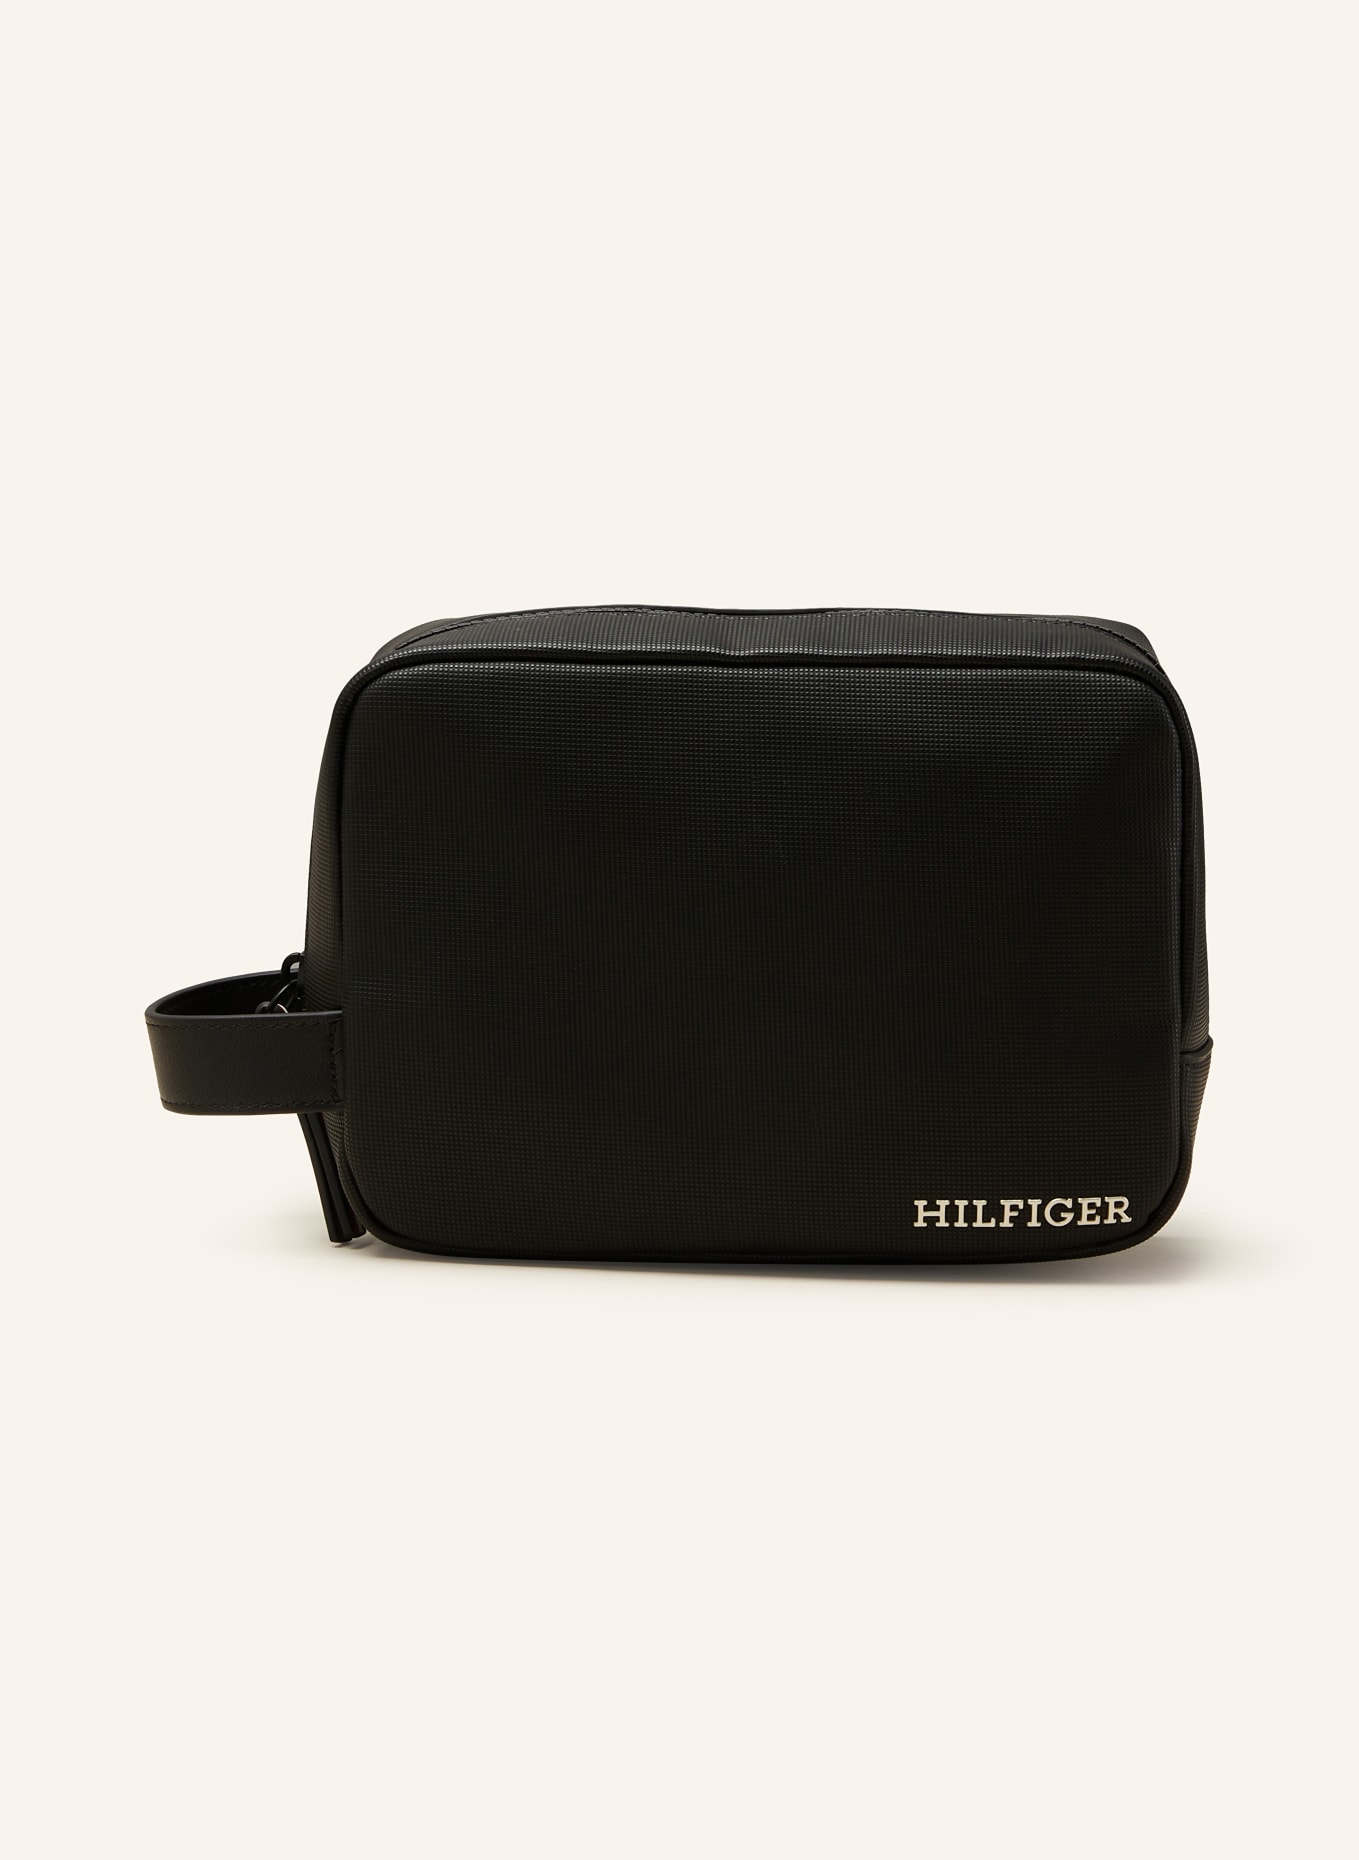 TOMMY HILFIGER Toiletry bag, Color: BLACK (Image 1)